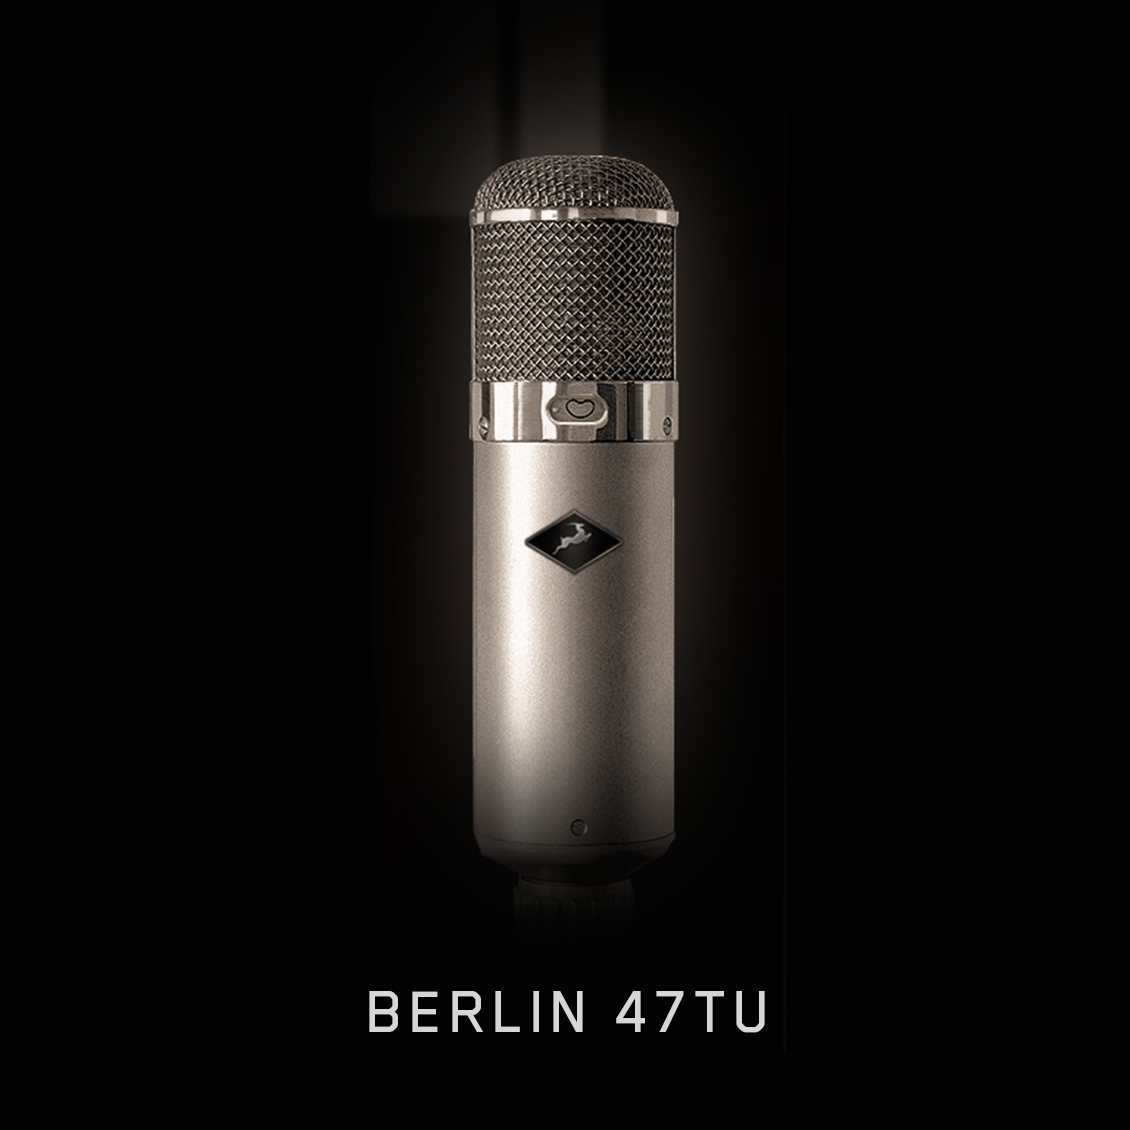 Berlin 47 TU